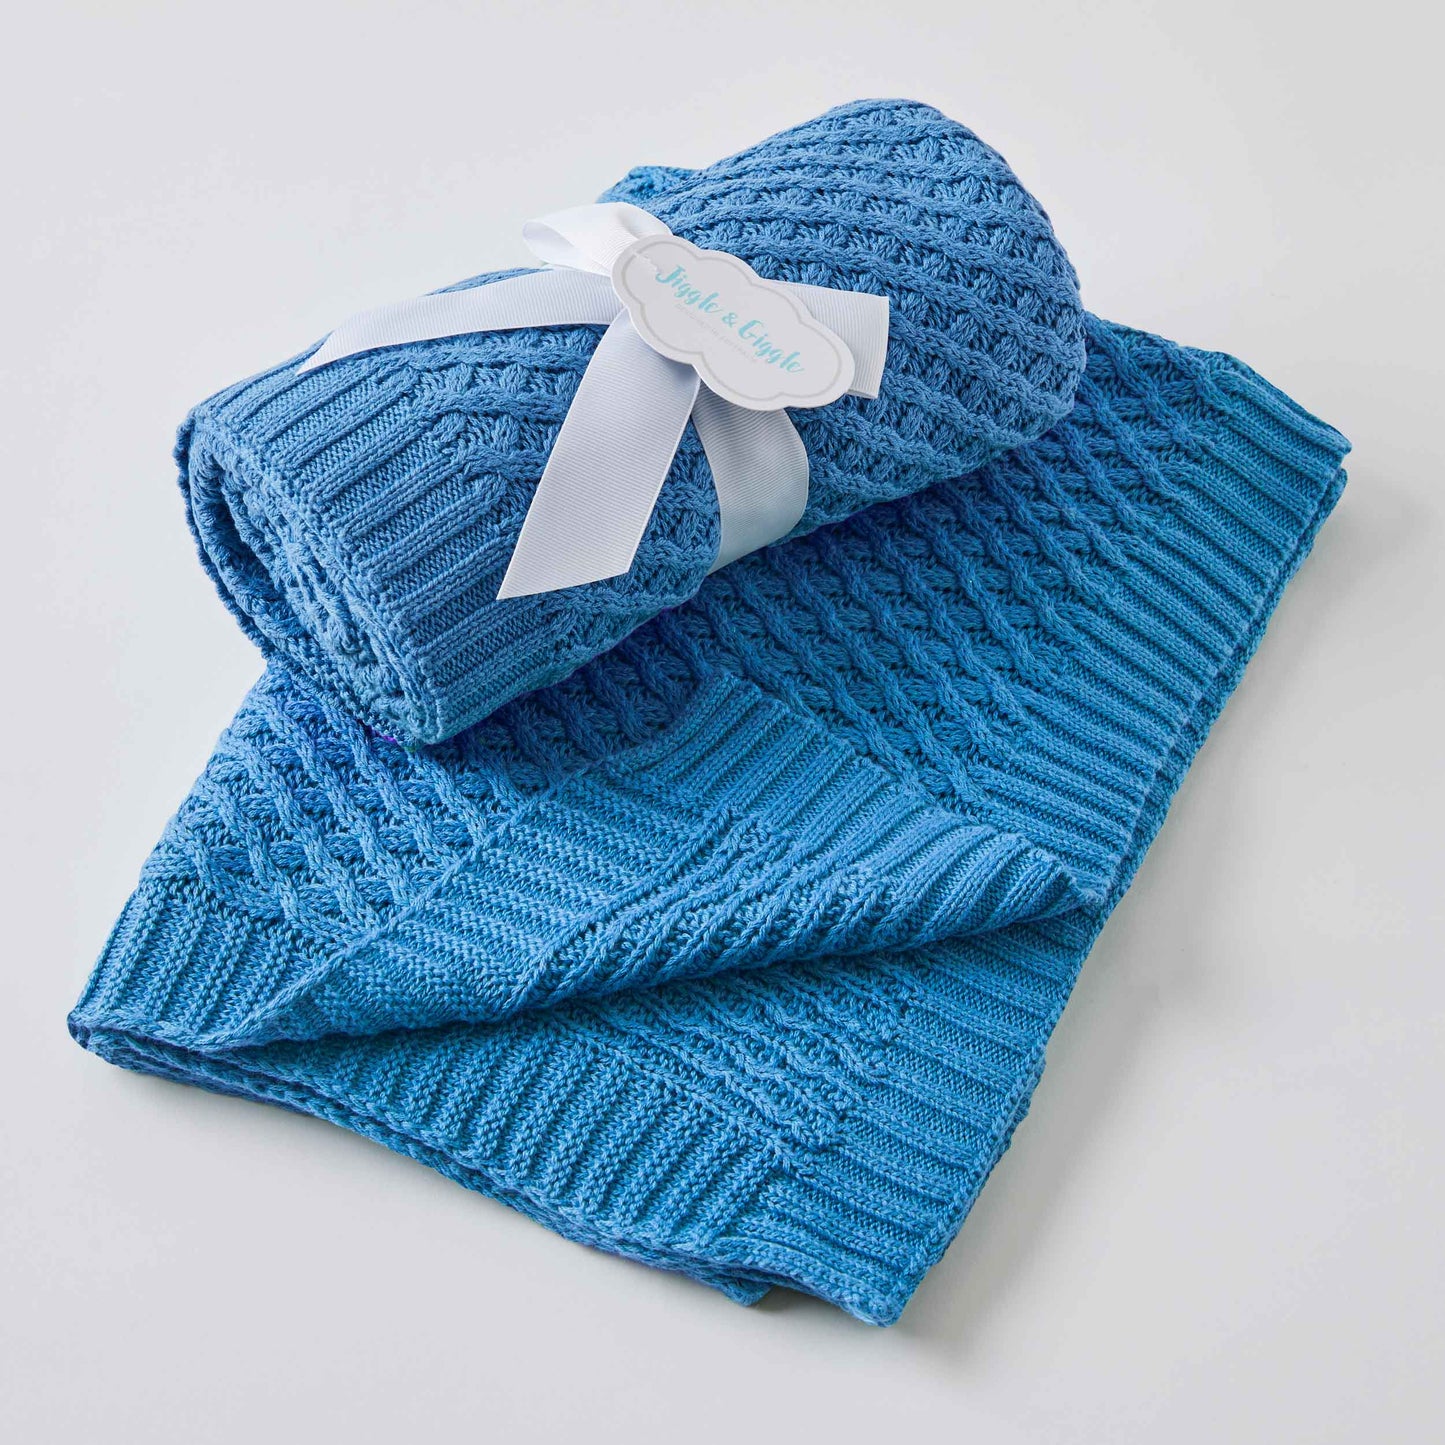 Basket Weave Knit Blanket - Blue